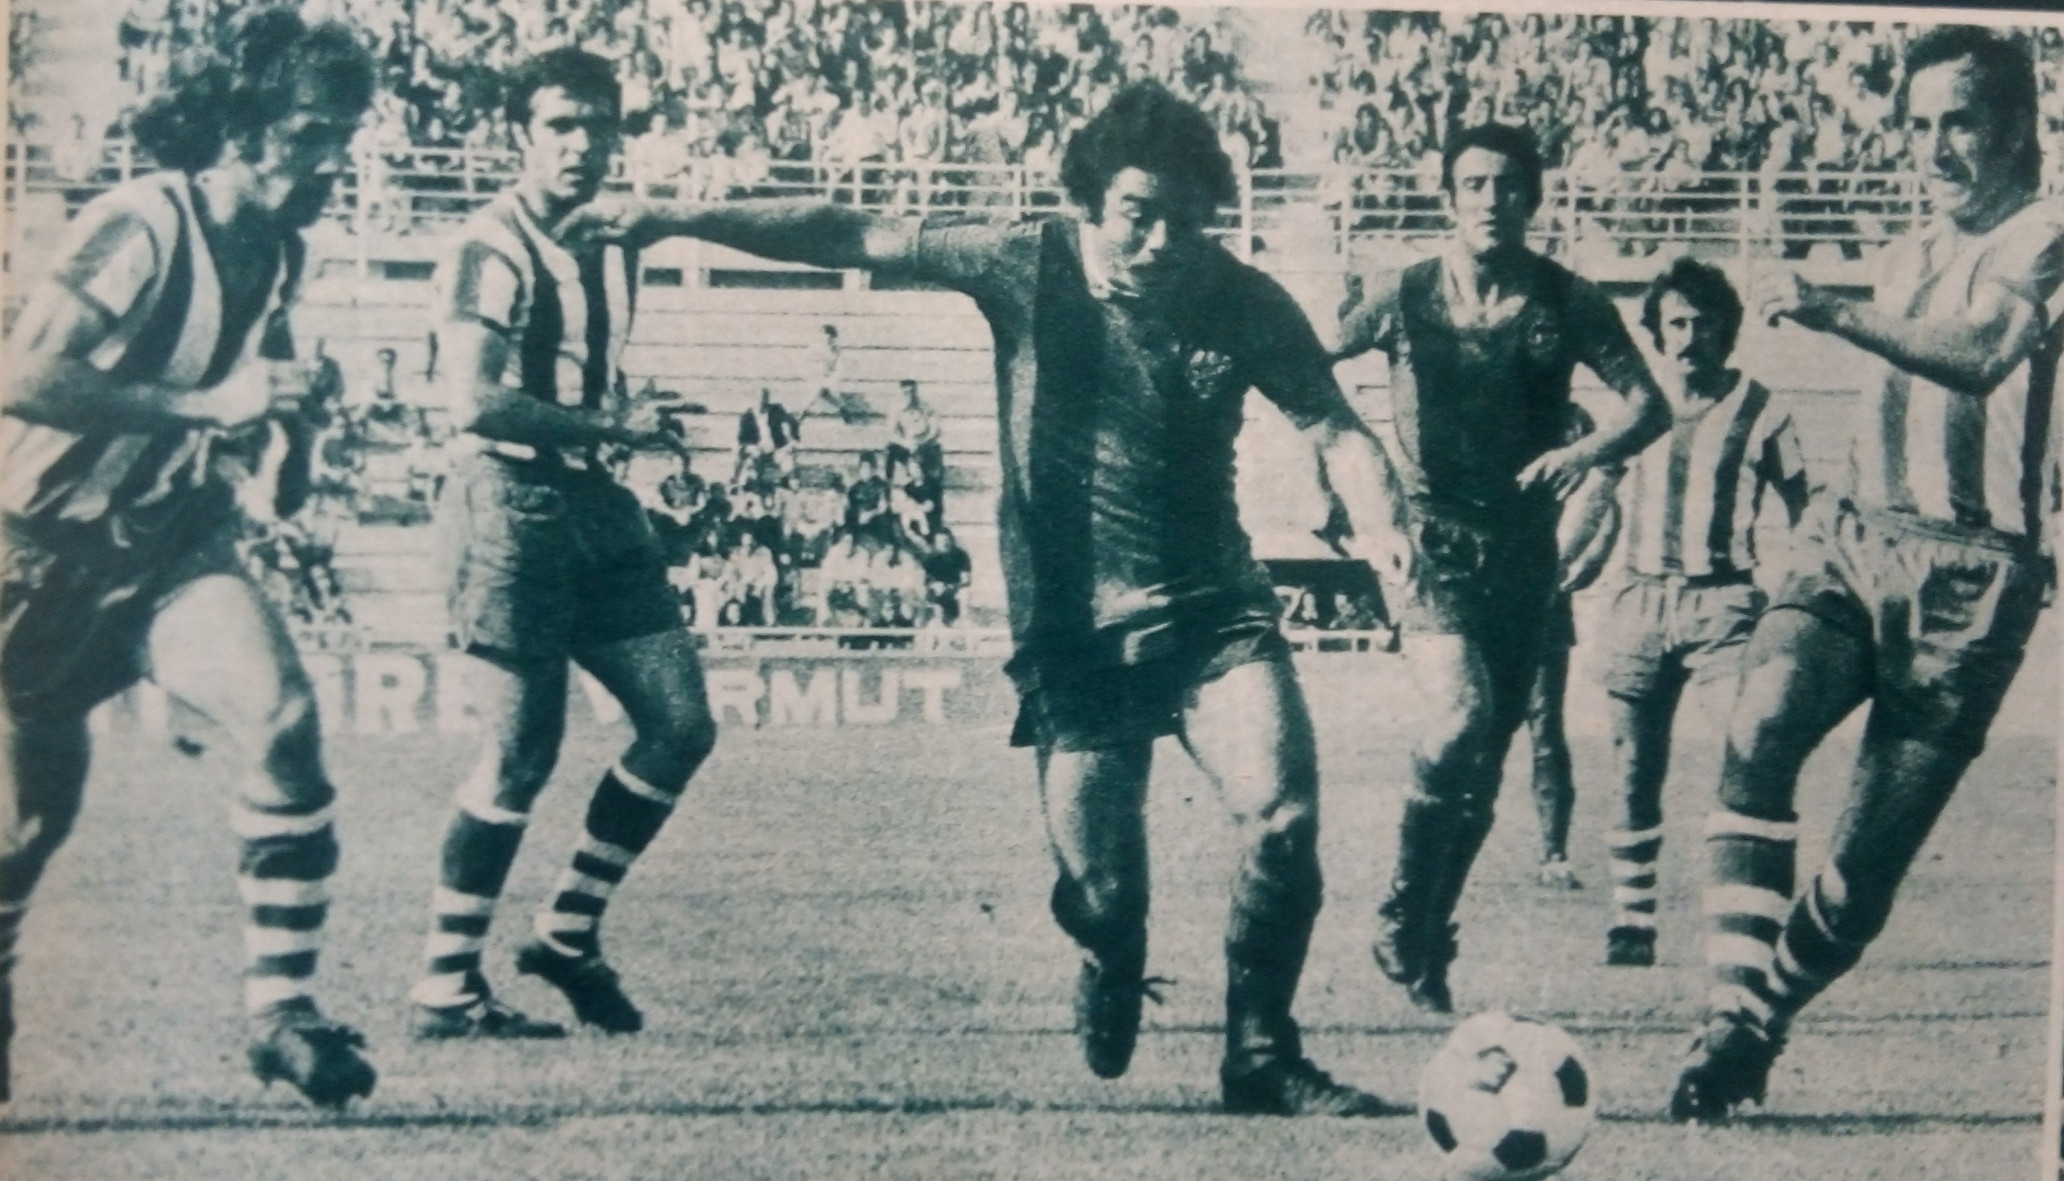 Carlos Humberto Caszely, ‘El Gerente’ del gol